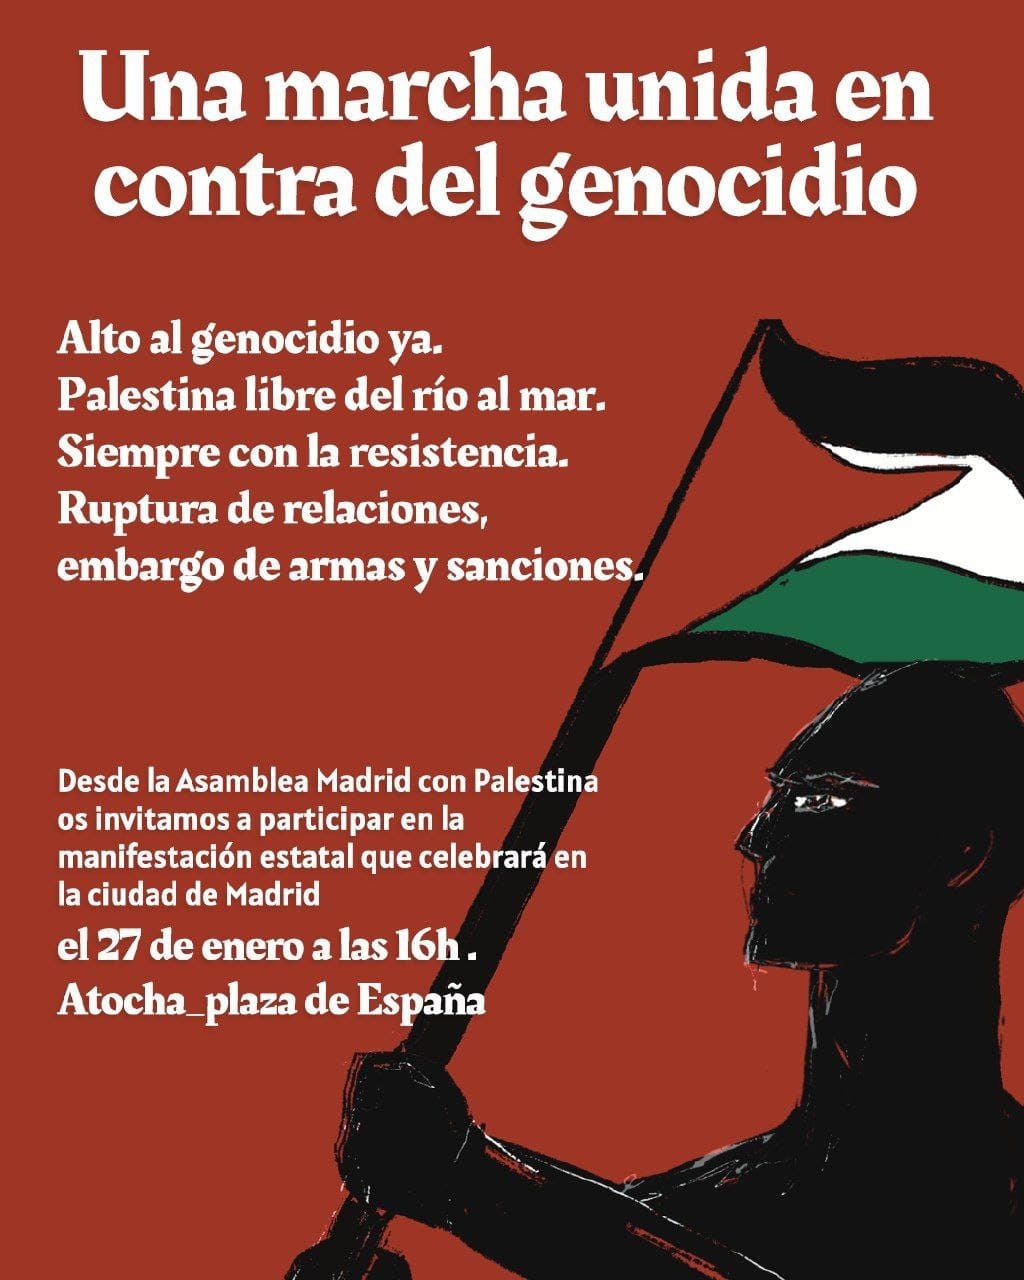 Marcha unida contra el genocidio